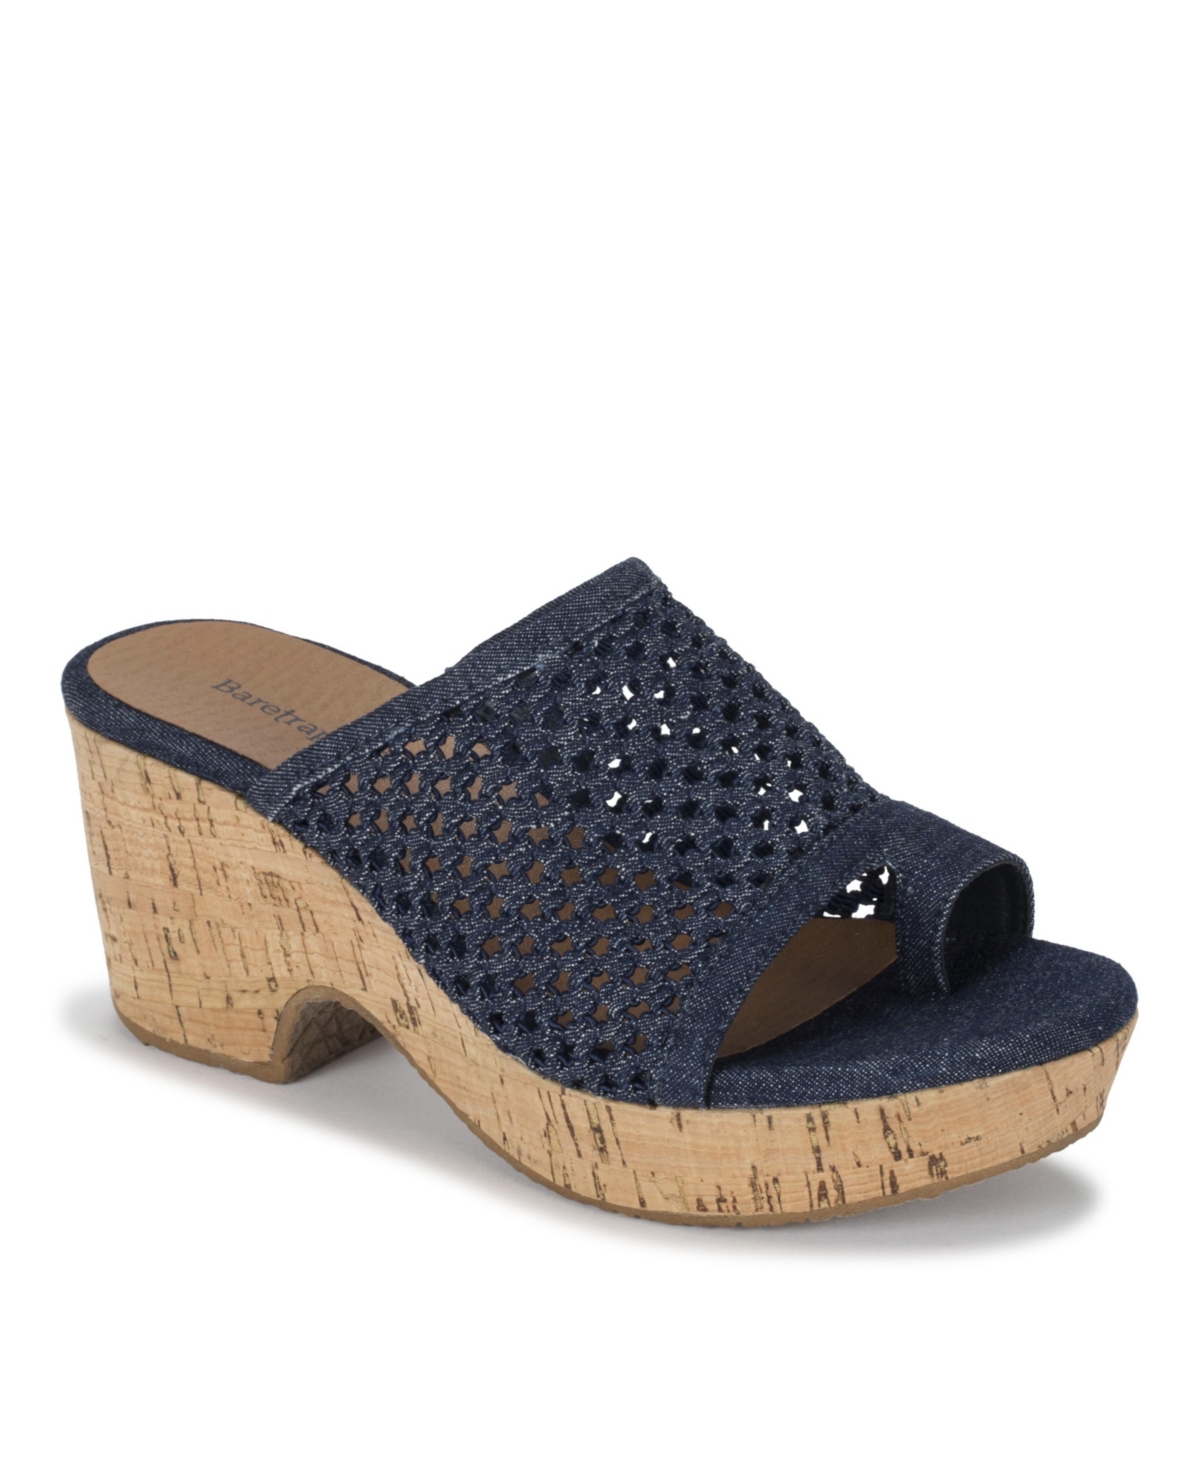 Baretraps Bethie Wedge Slide Sandals Women's Shoes